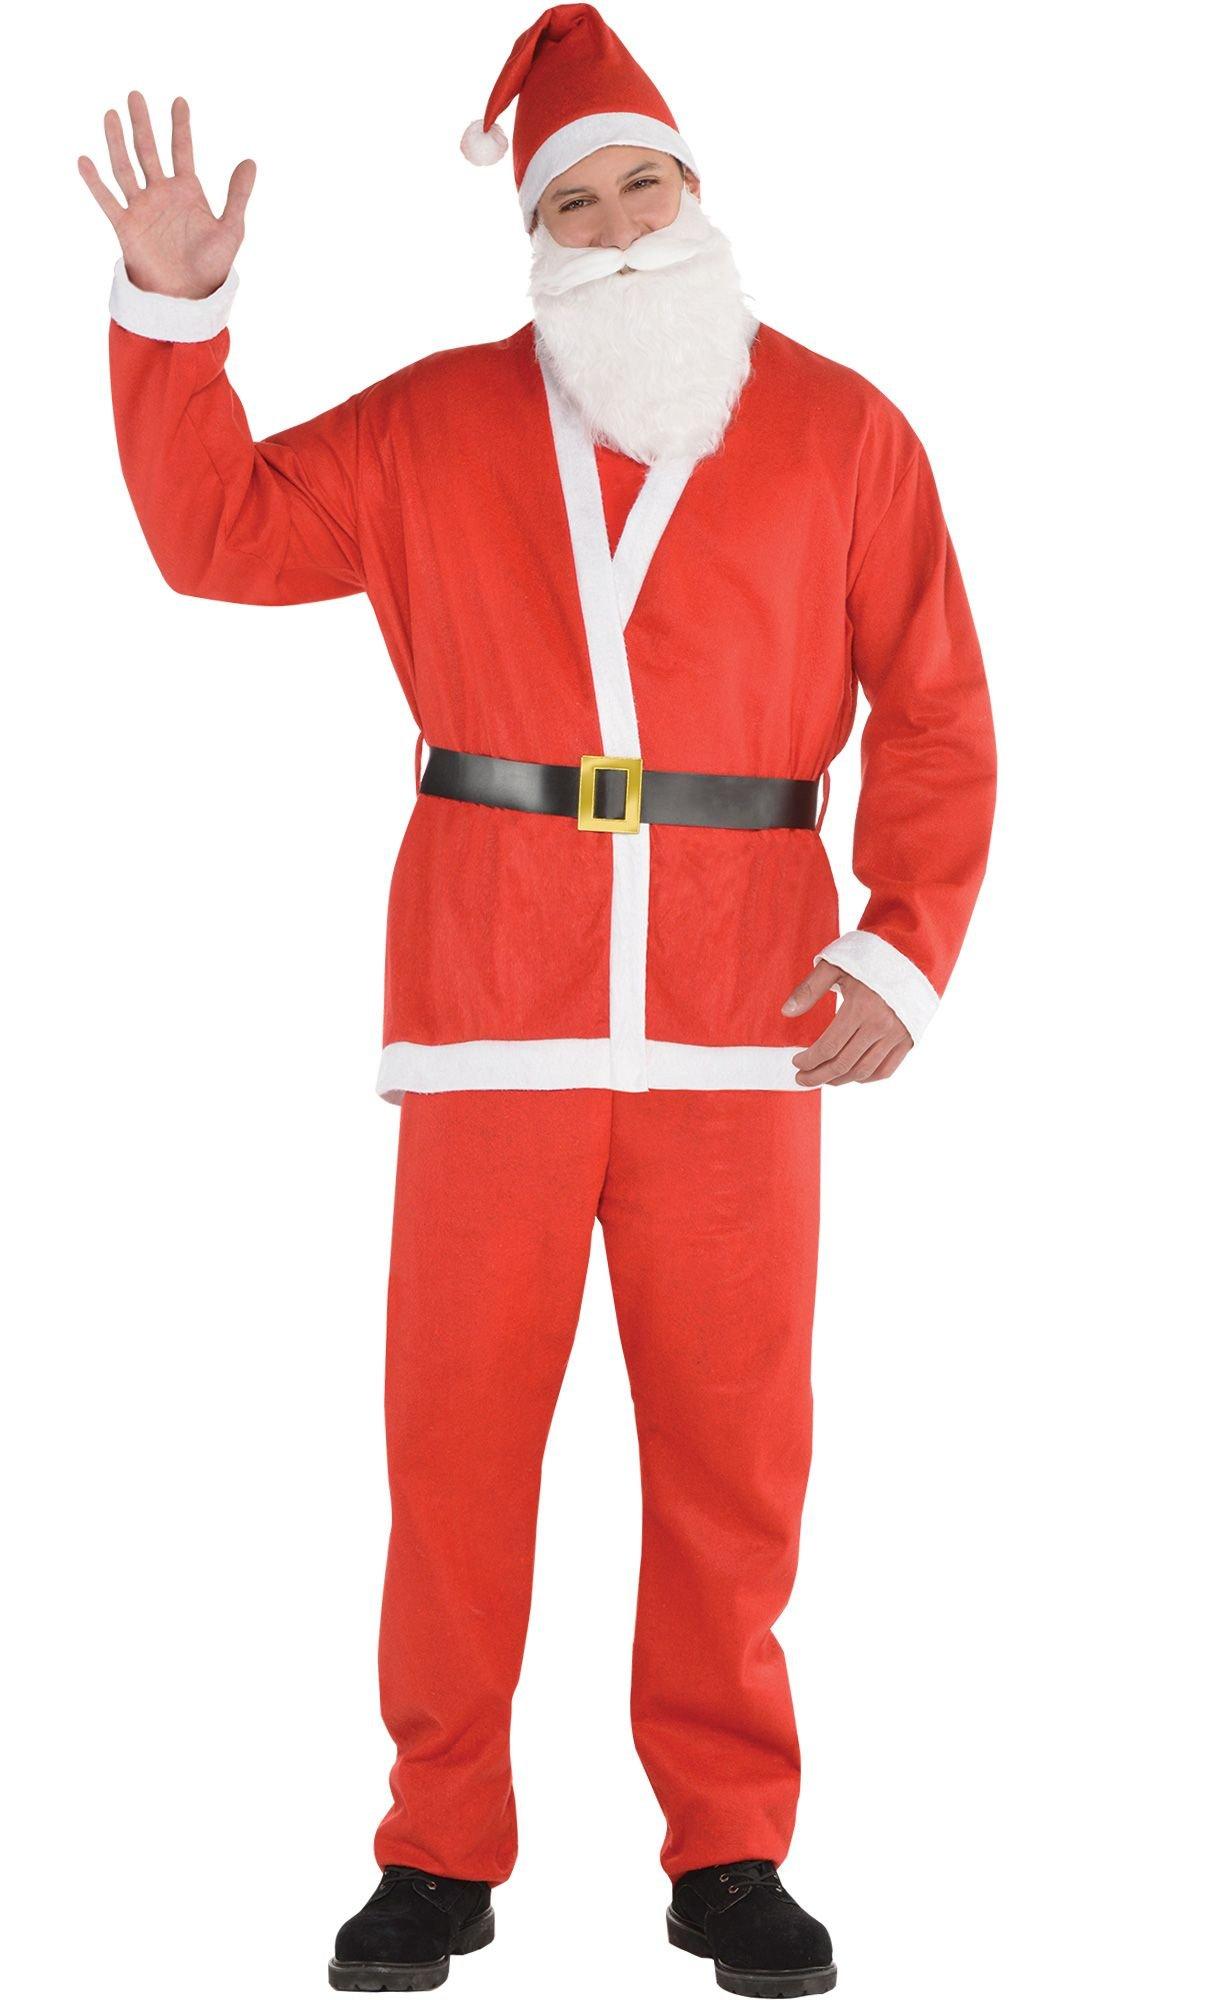 Adult Santa Suit